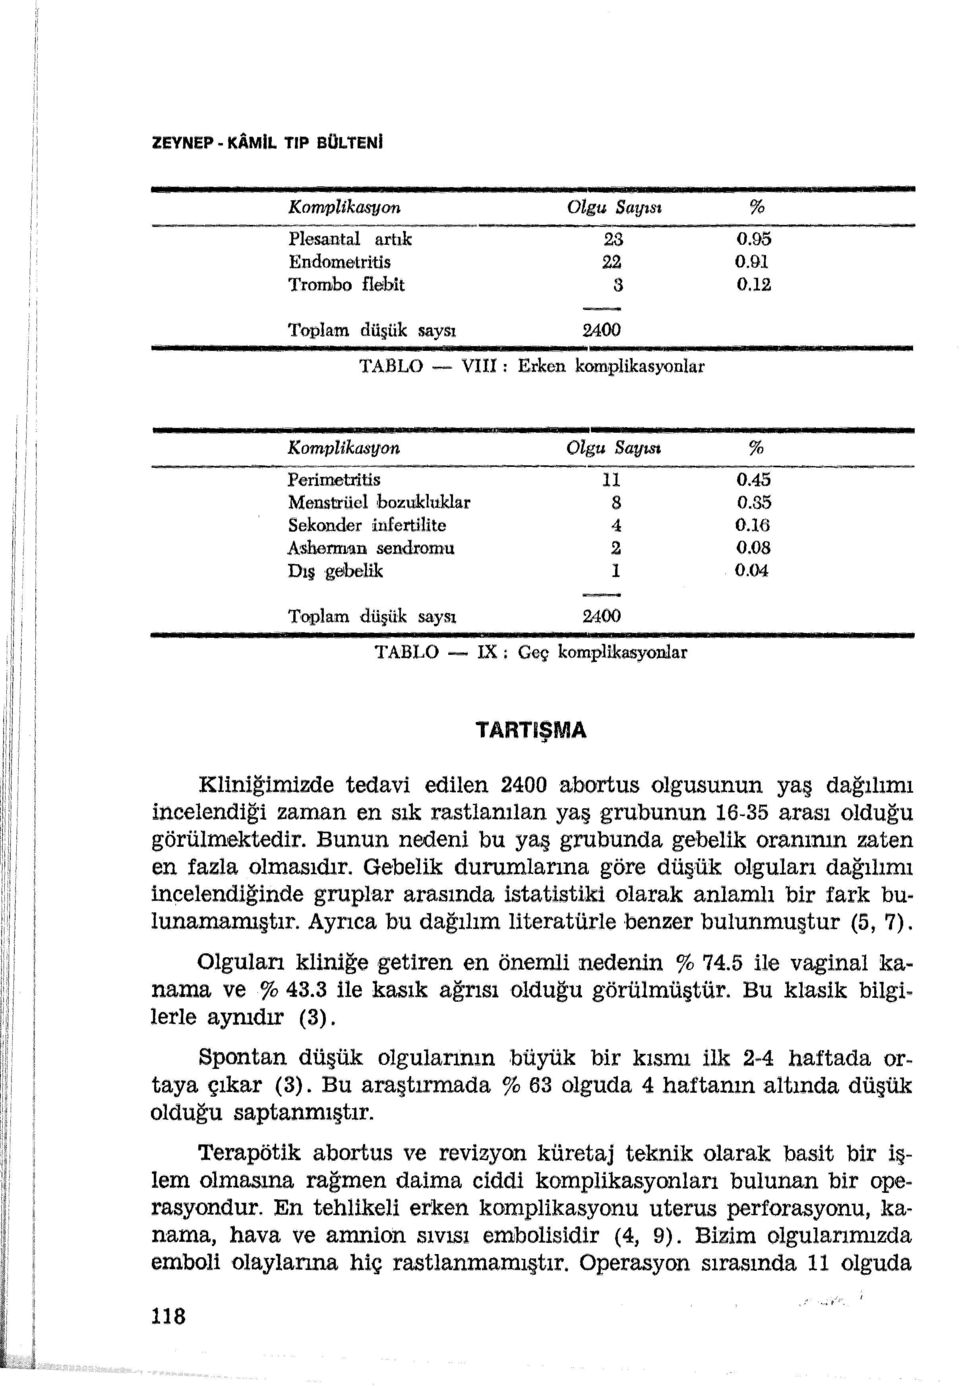 16 A shennıan sendromu 2 0.08 Dış gebelik 1 0.04 2400 TABLO ~ IX : Geç komplikasyonlar TARTISMA.